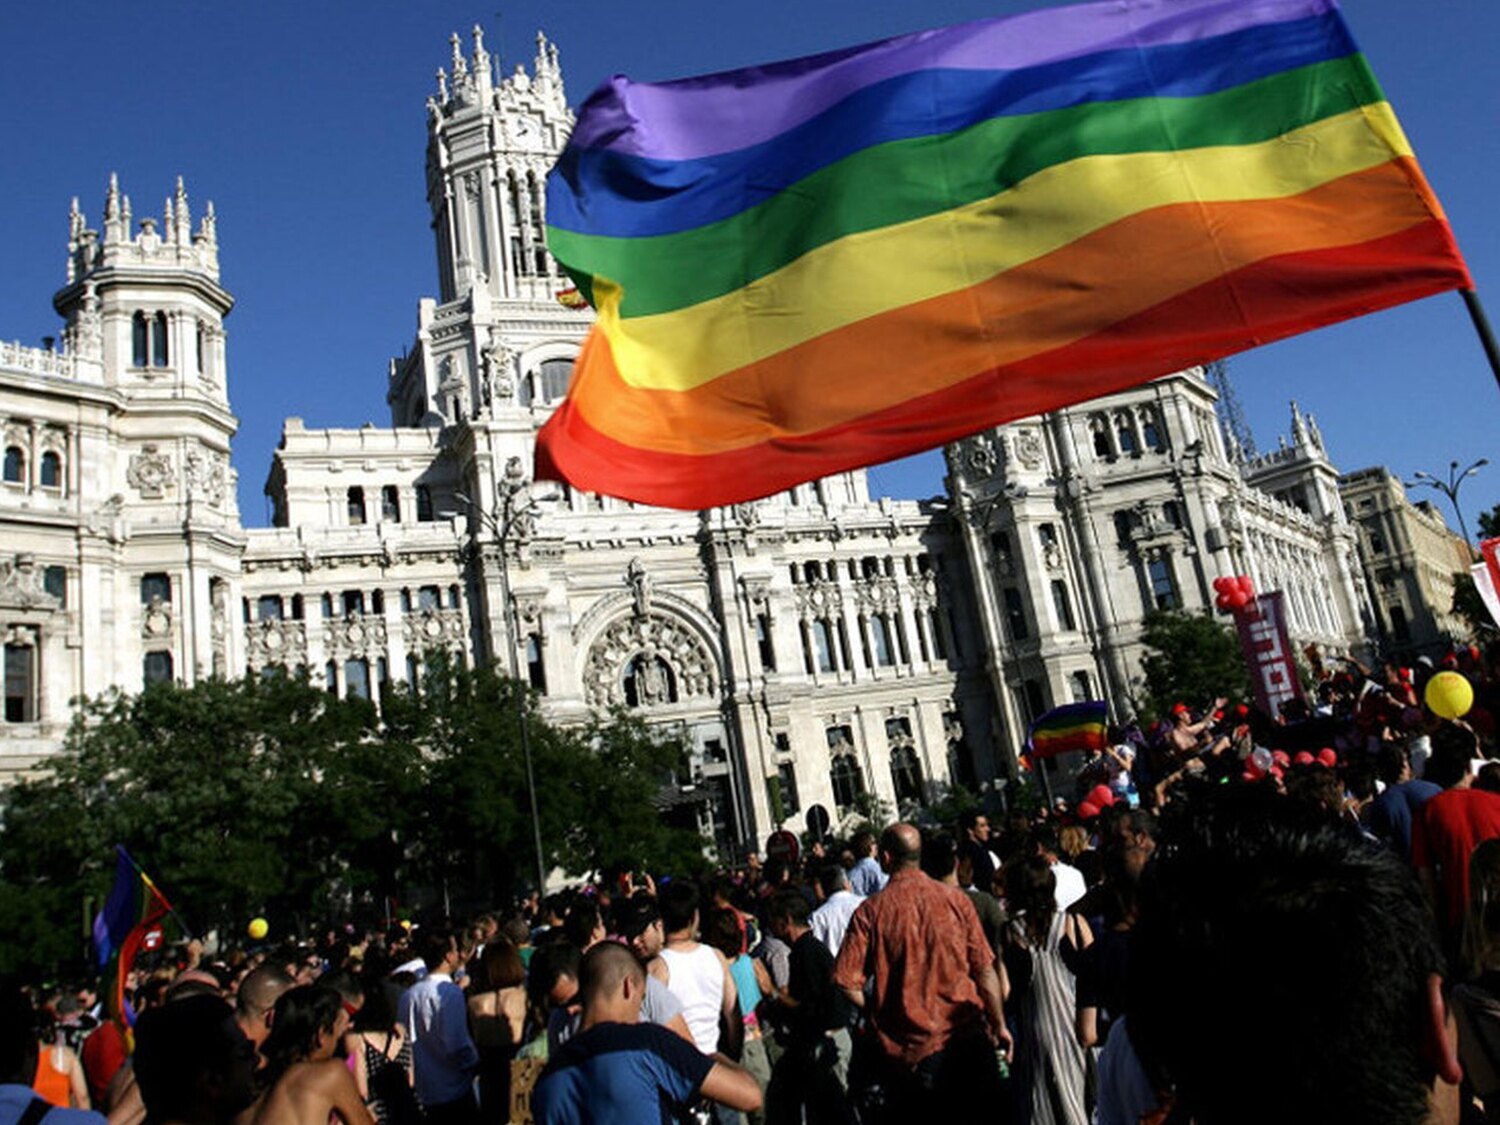 Orgullo LGTBI de Madrid 2021: horario, recorrido, aforo y recomendaciones